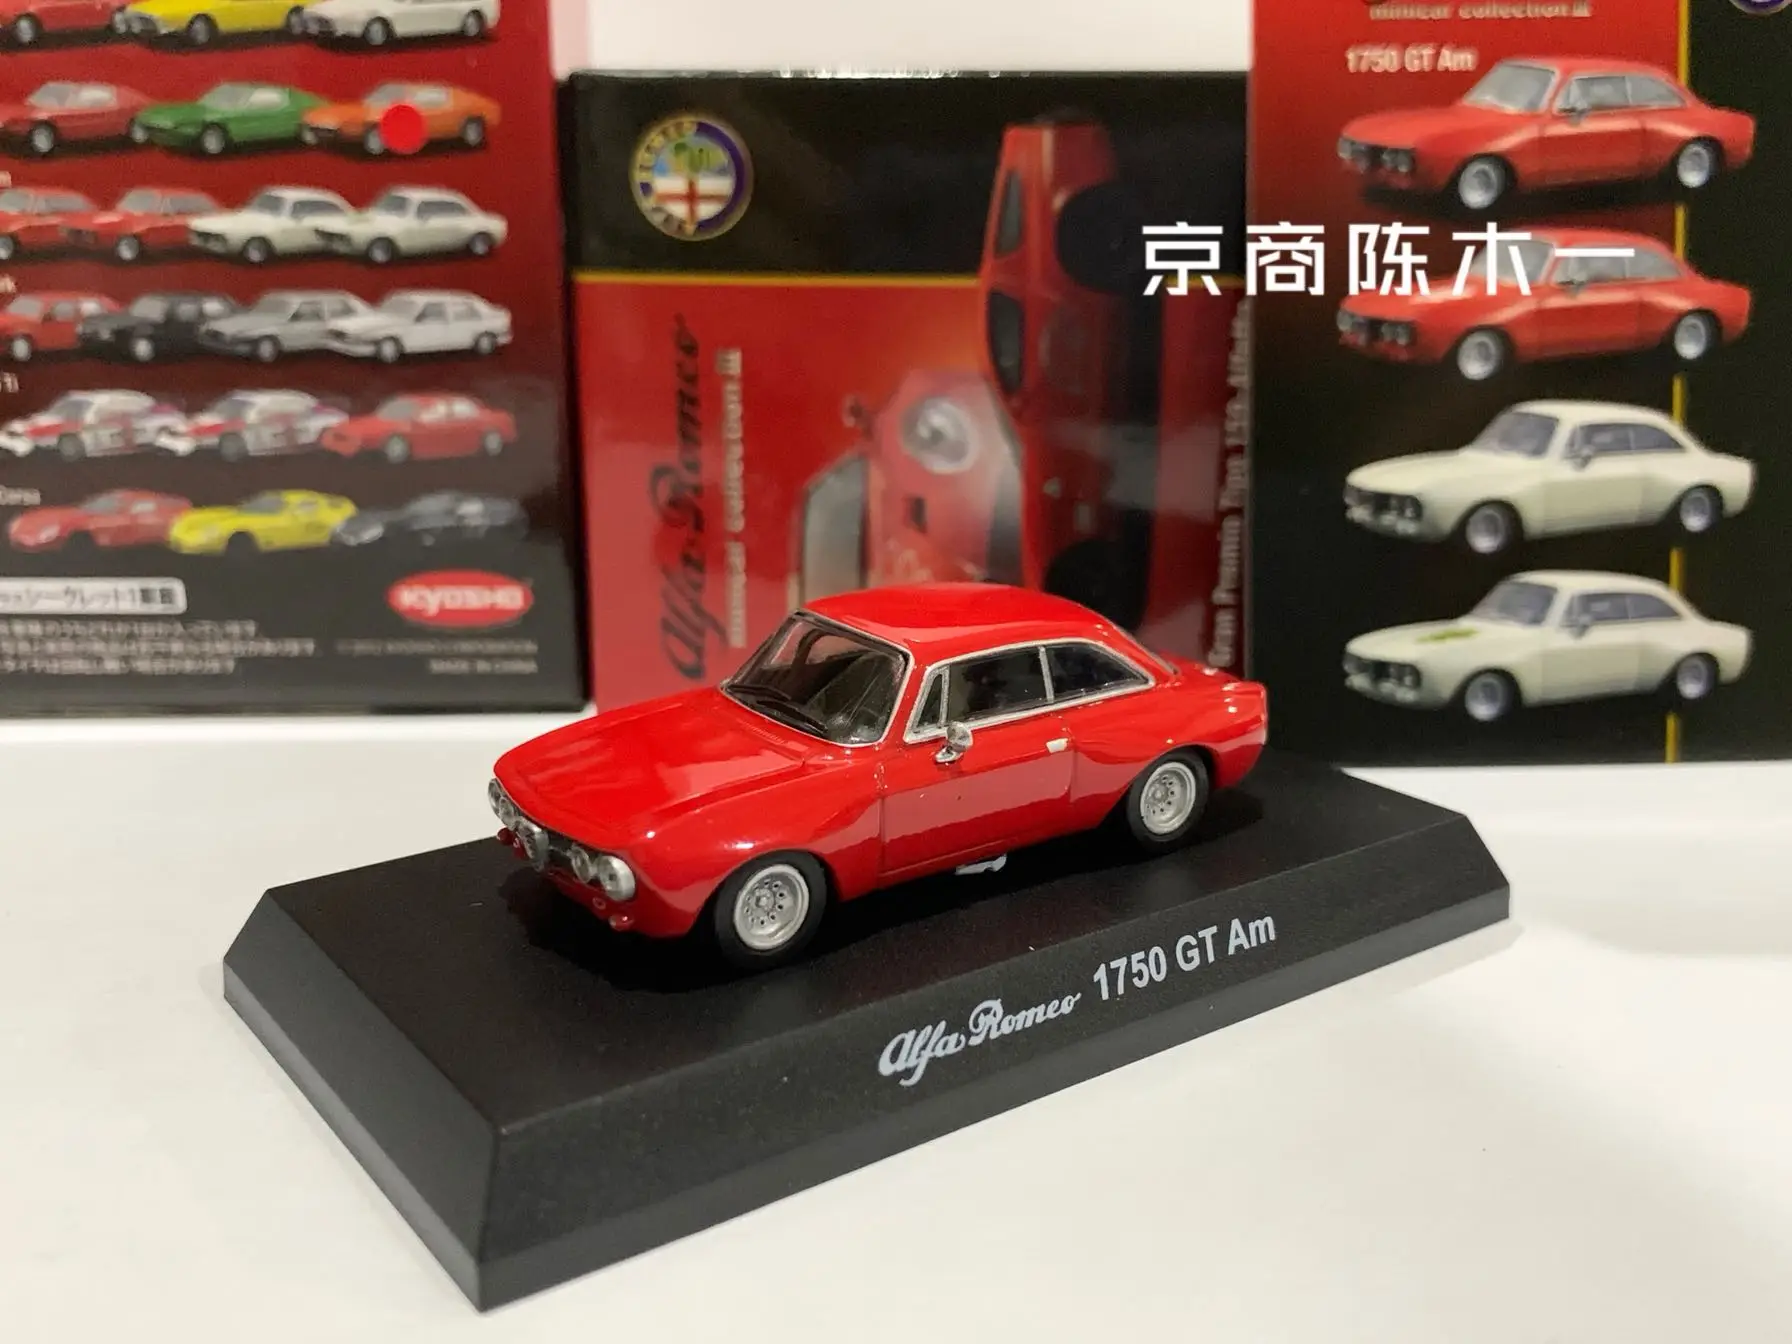 kyosho-alfa-romeo-1-64-gt-am-lm-f1-racing-coleccion-de-juguetes-de-modelos-de-decoracion-de-coche-de-aleacion-fundida-a-presion-1750